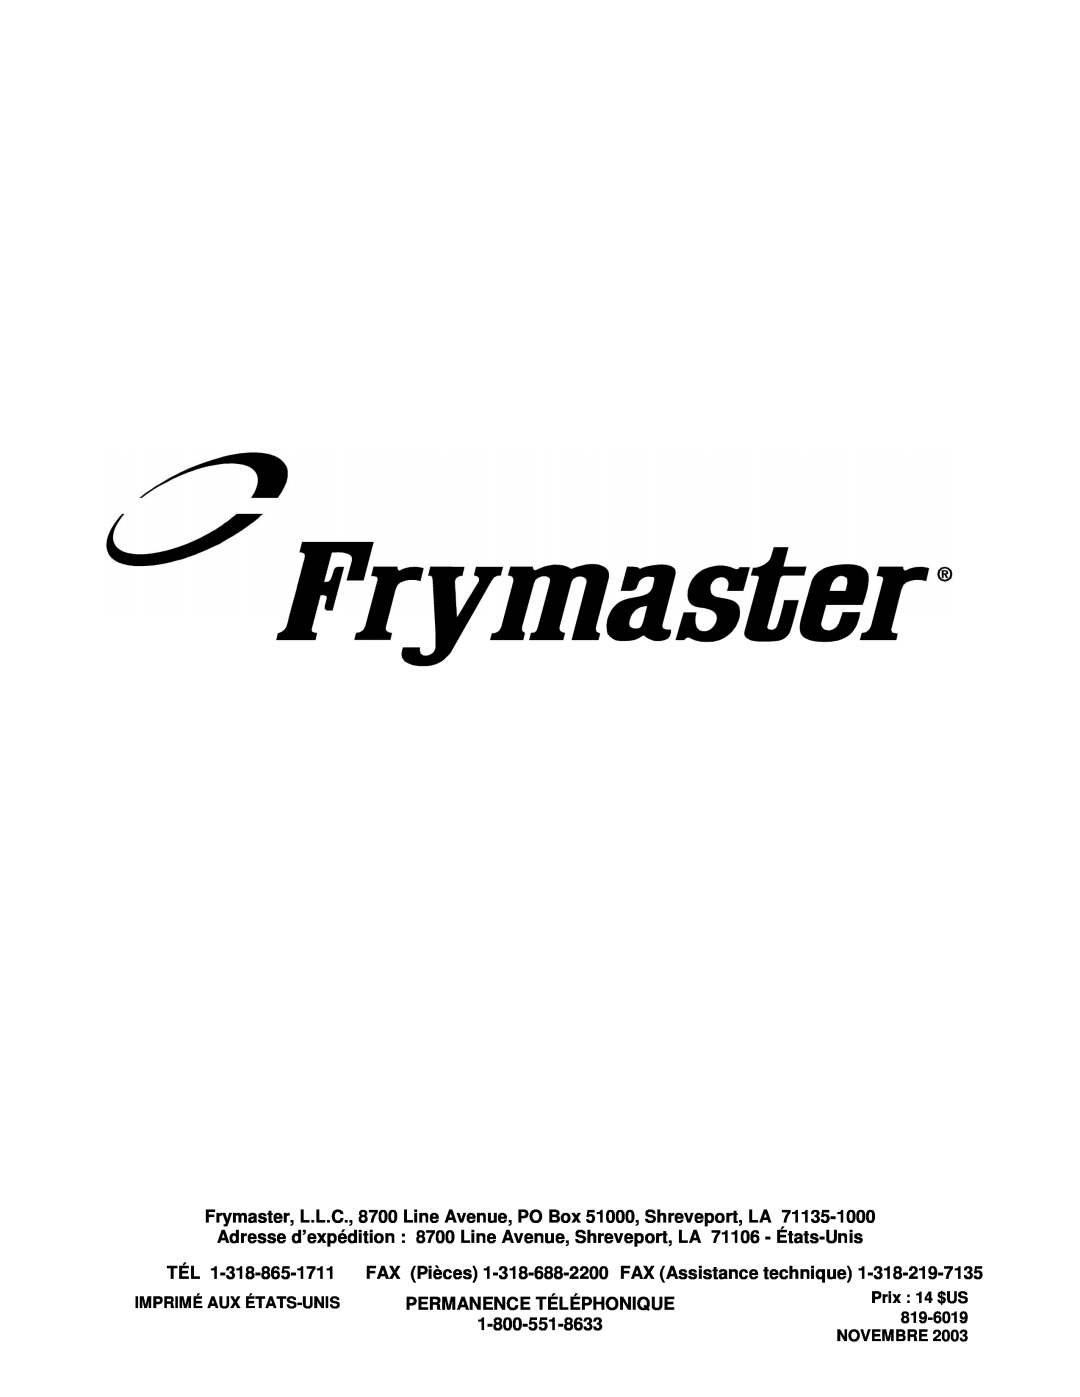 Frymaster CF FAX Pièces 1-318-688-2200 FAX Assistance technique, Permanence Téléphonique, Imprimé Aux États-Unis, 819-6019 